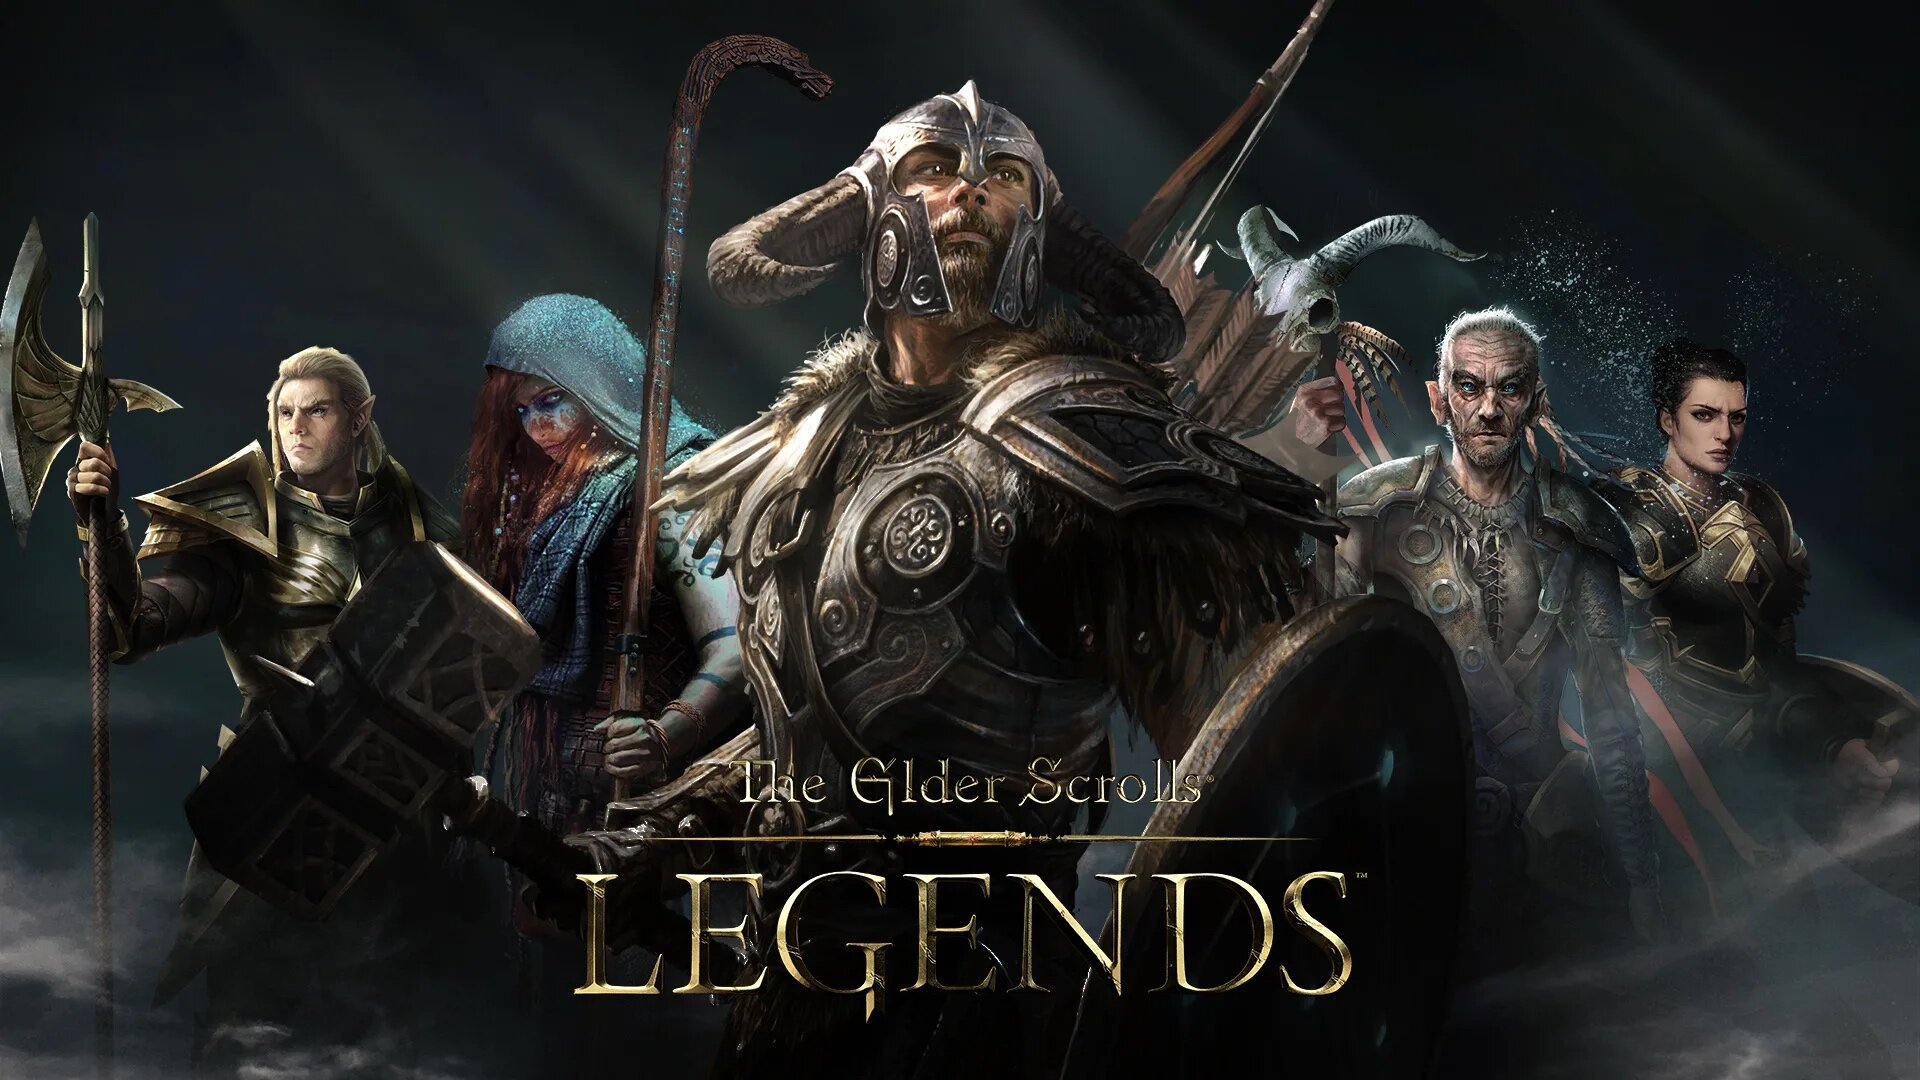 The Elder Scrolls: Legends Wallpapers